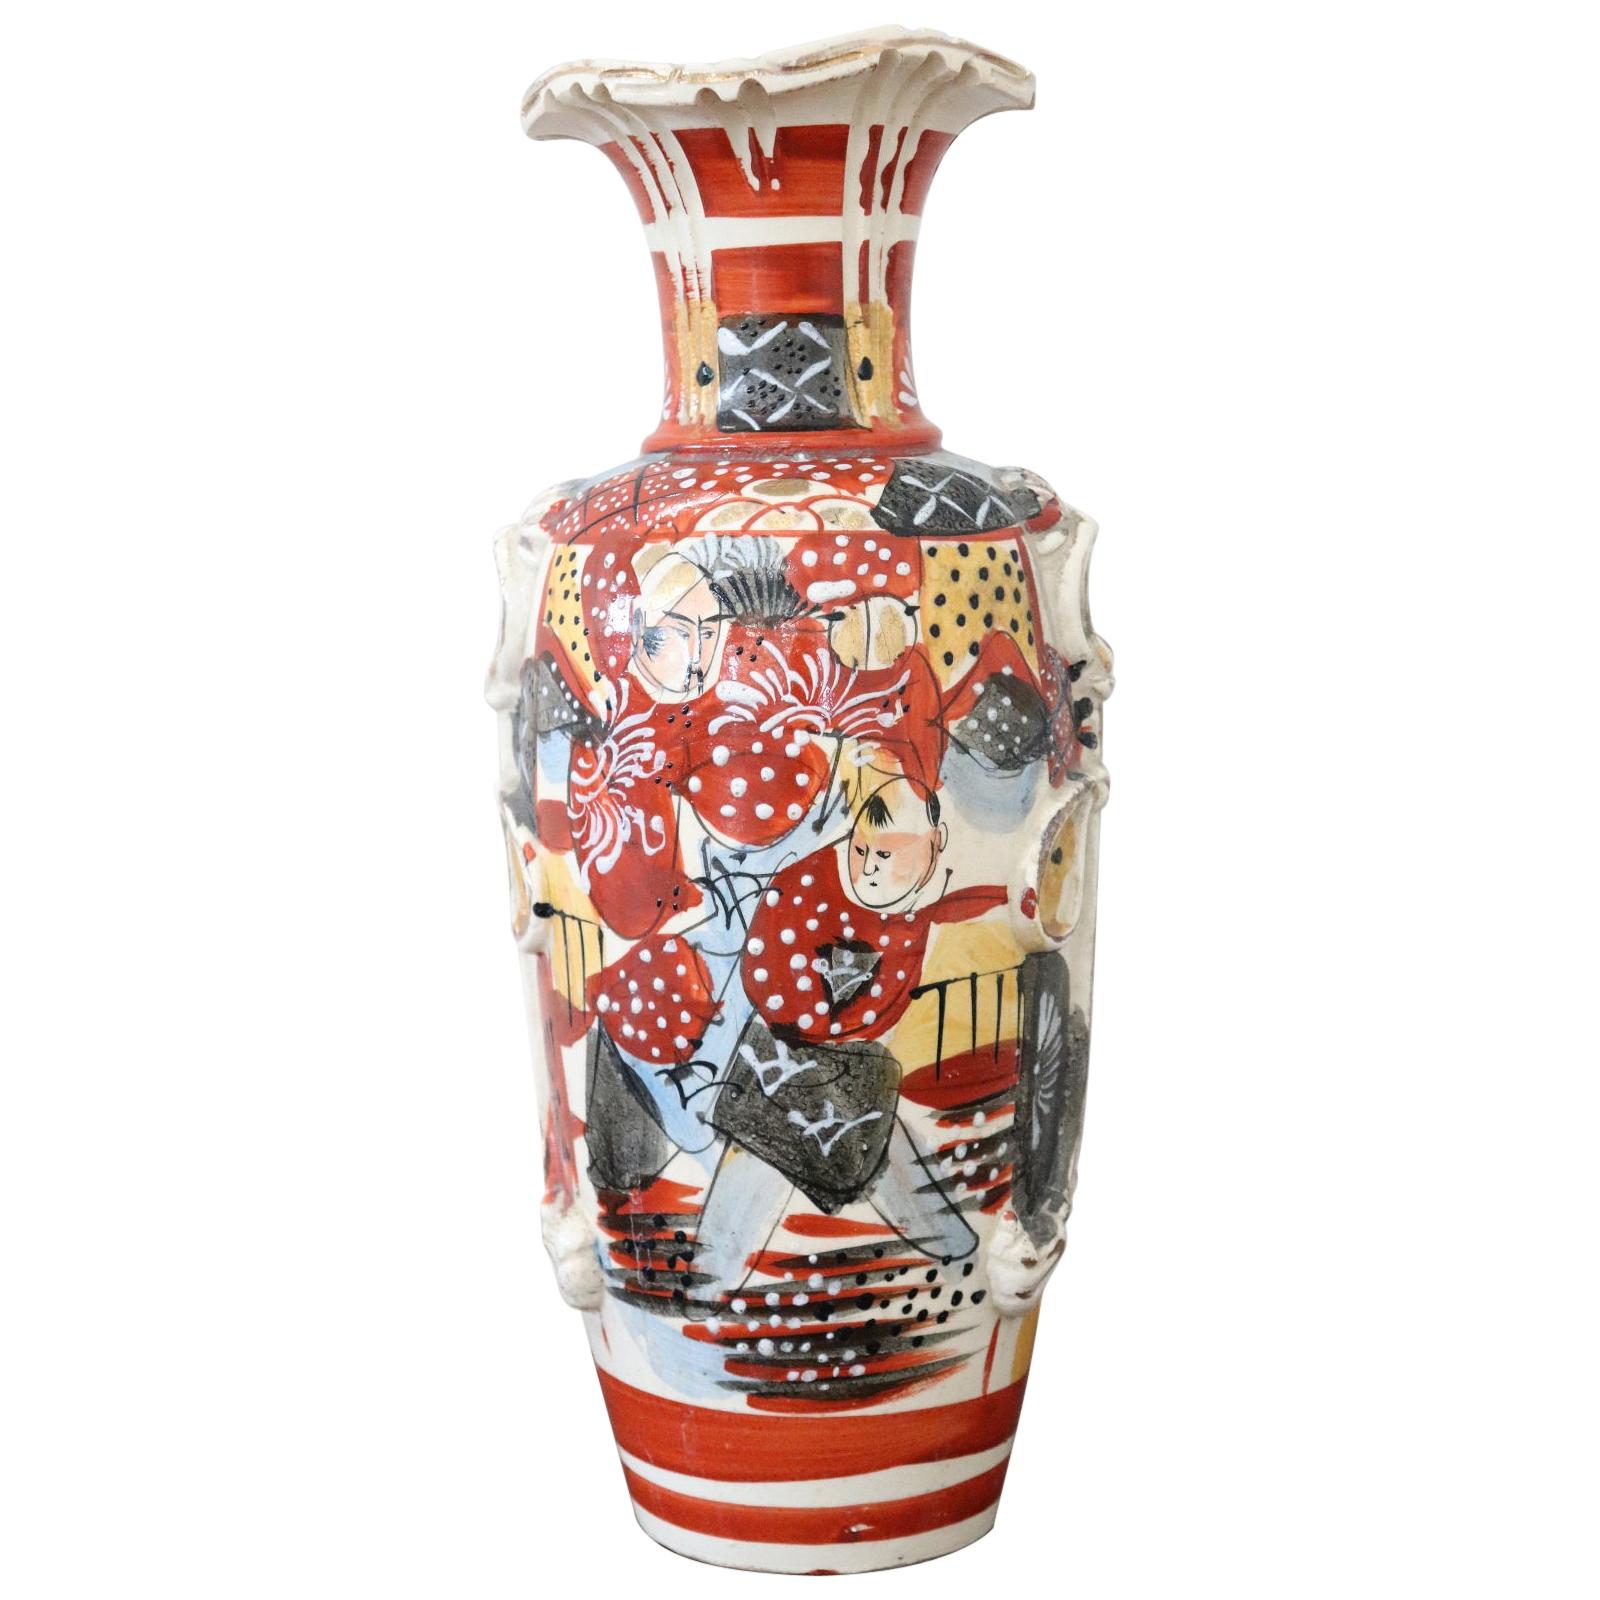 20th Century Japanese Vintage Artistic Satsuma Vase in Decorated Ceramic